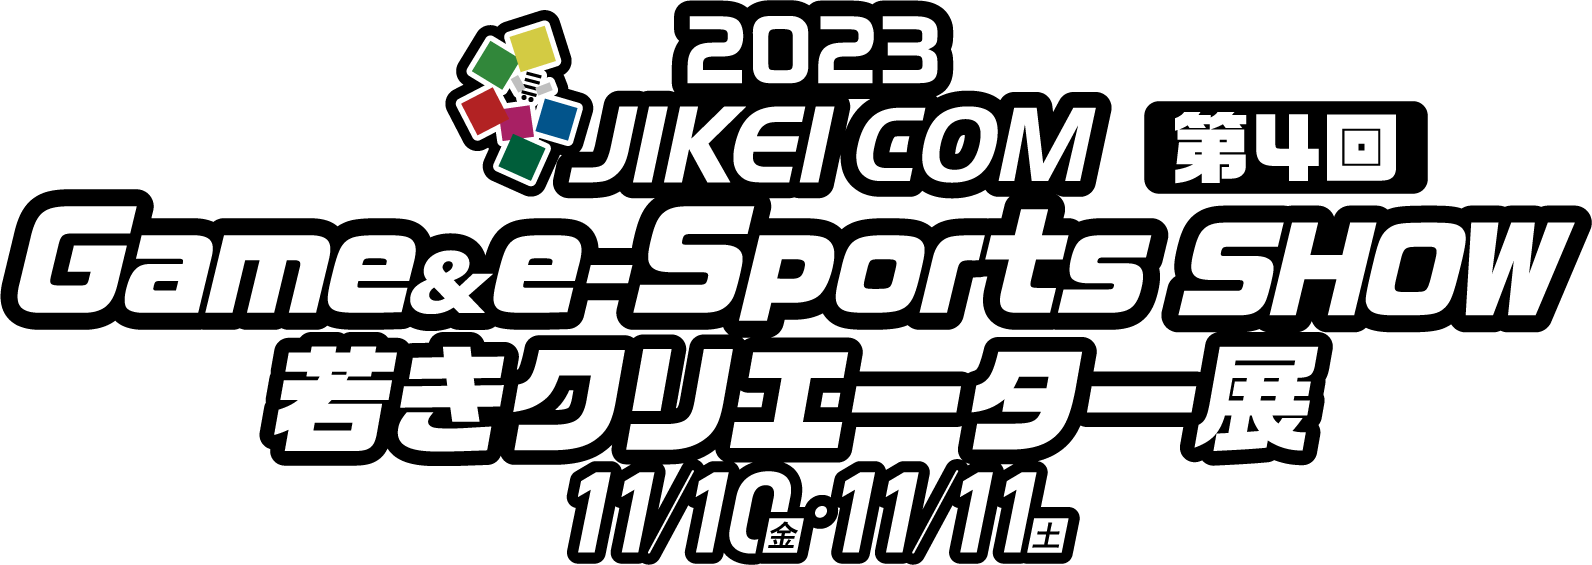 JIKEI COM Game & e-Sports SHOW 若きクリエーター展